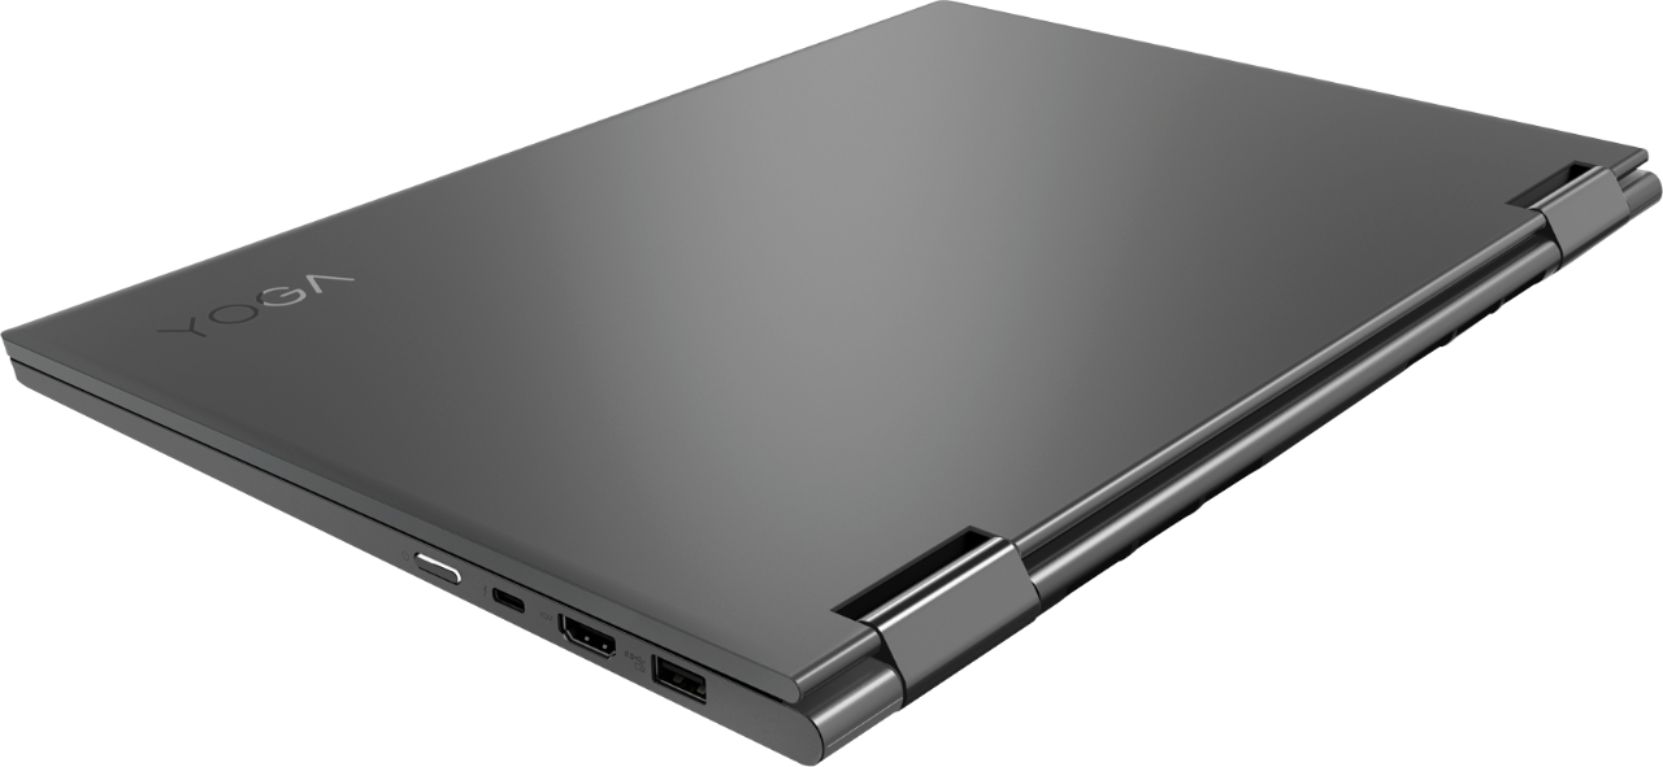 Best Buy: Lenovo Yoga 730 2-in-1 15.6